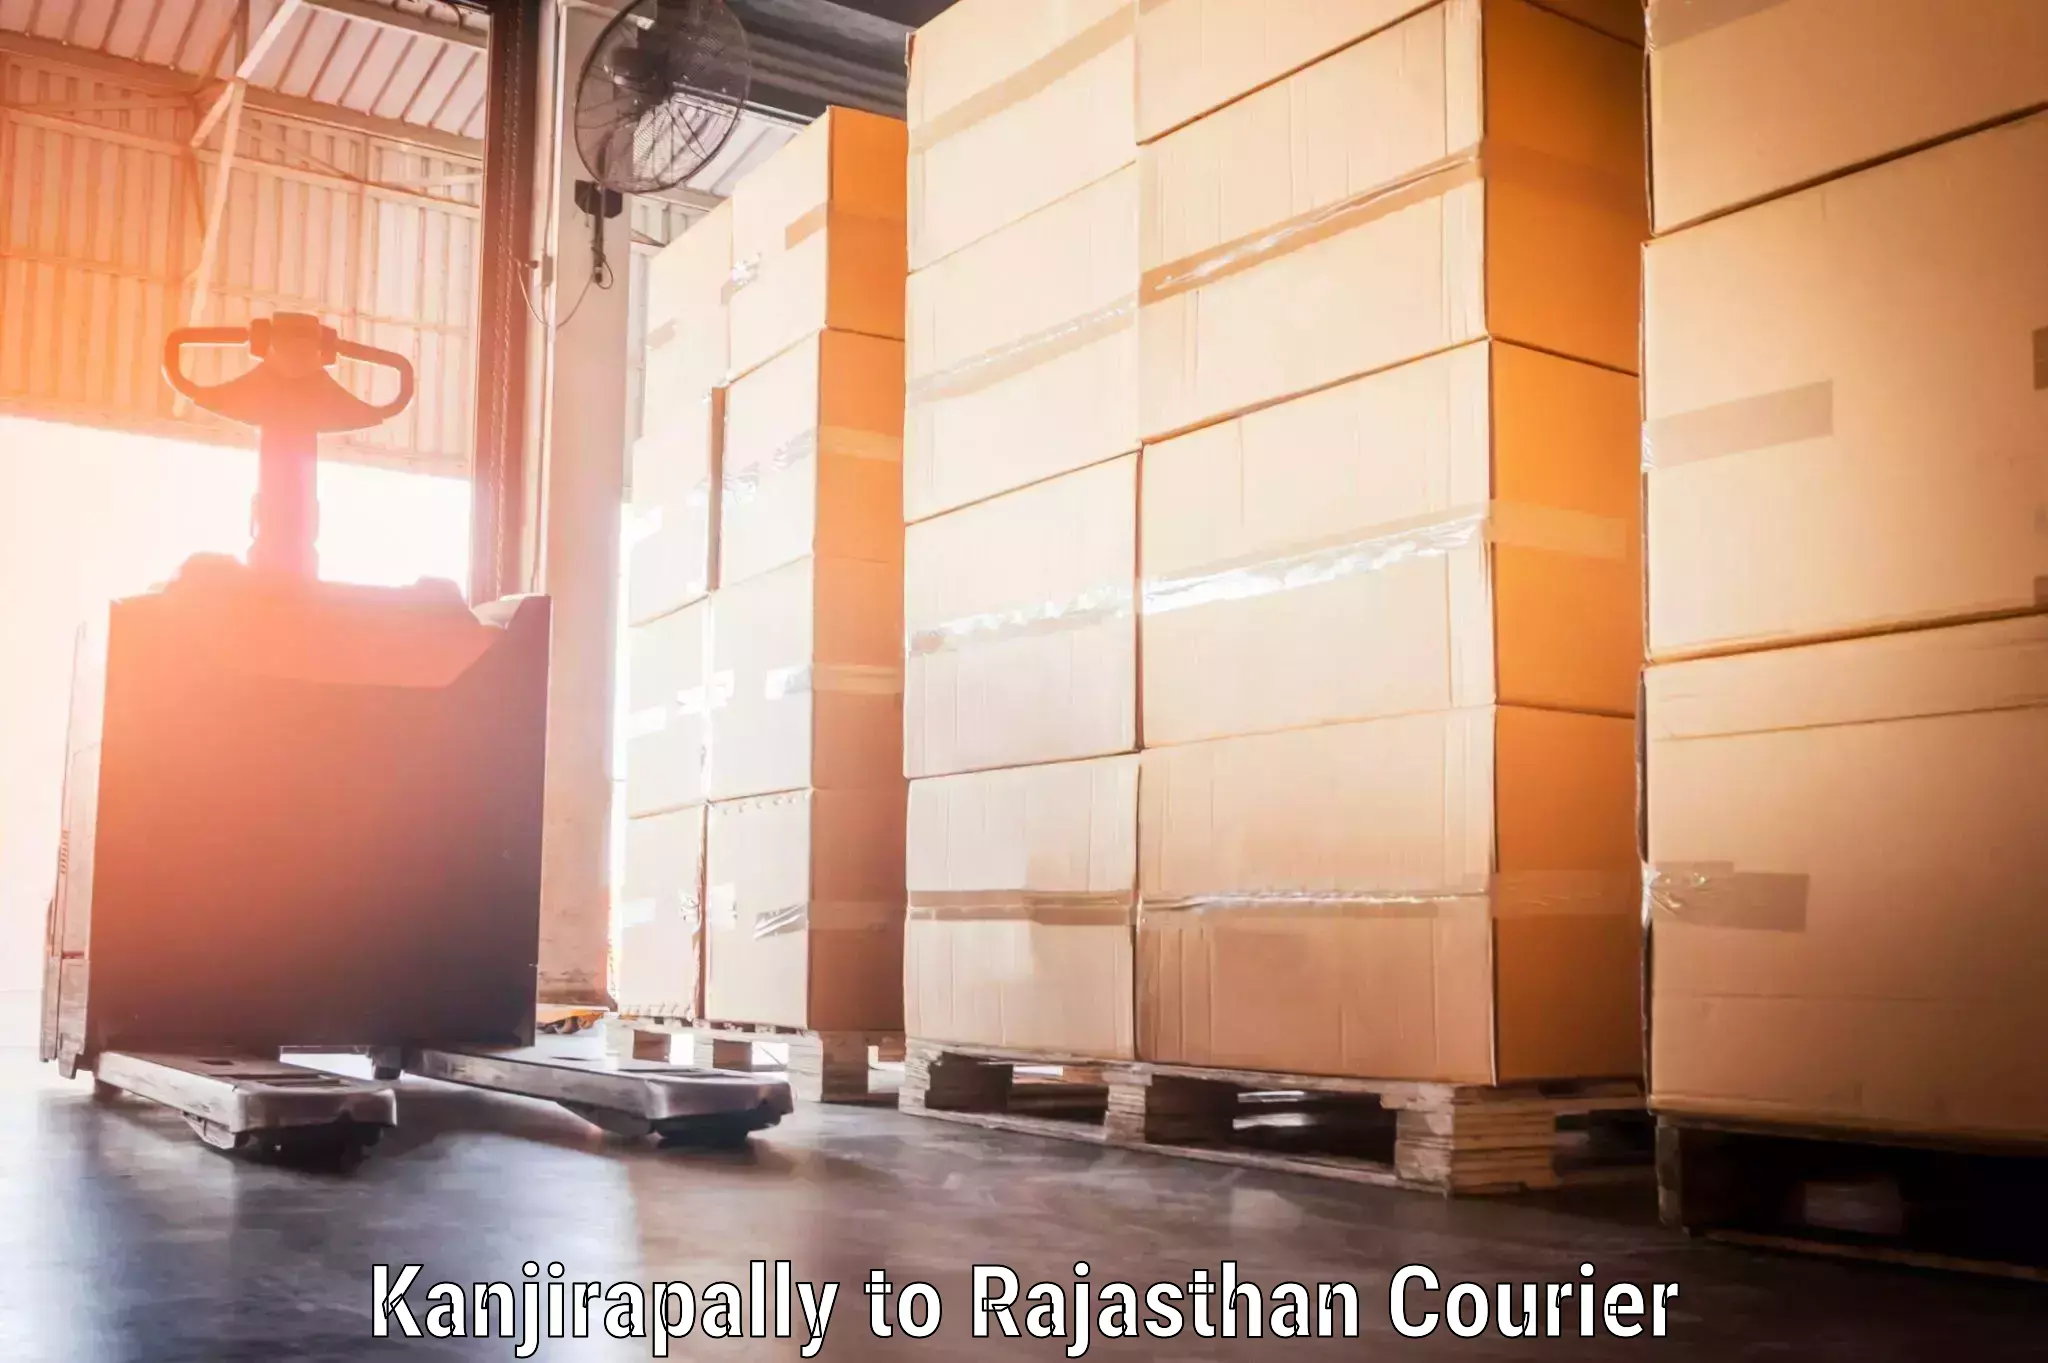 Local baggage delivery Kanjirapally to Nainwa